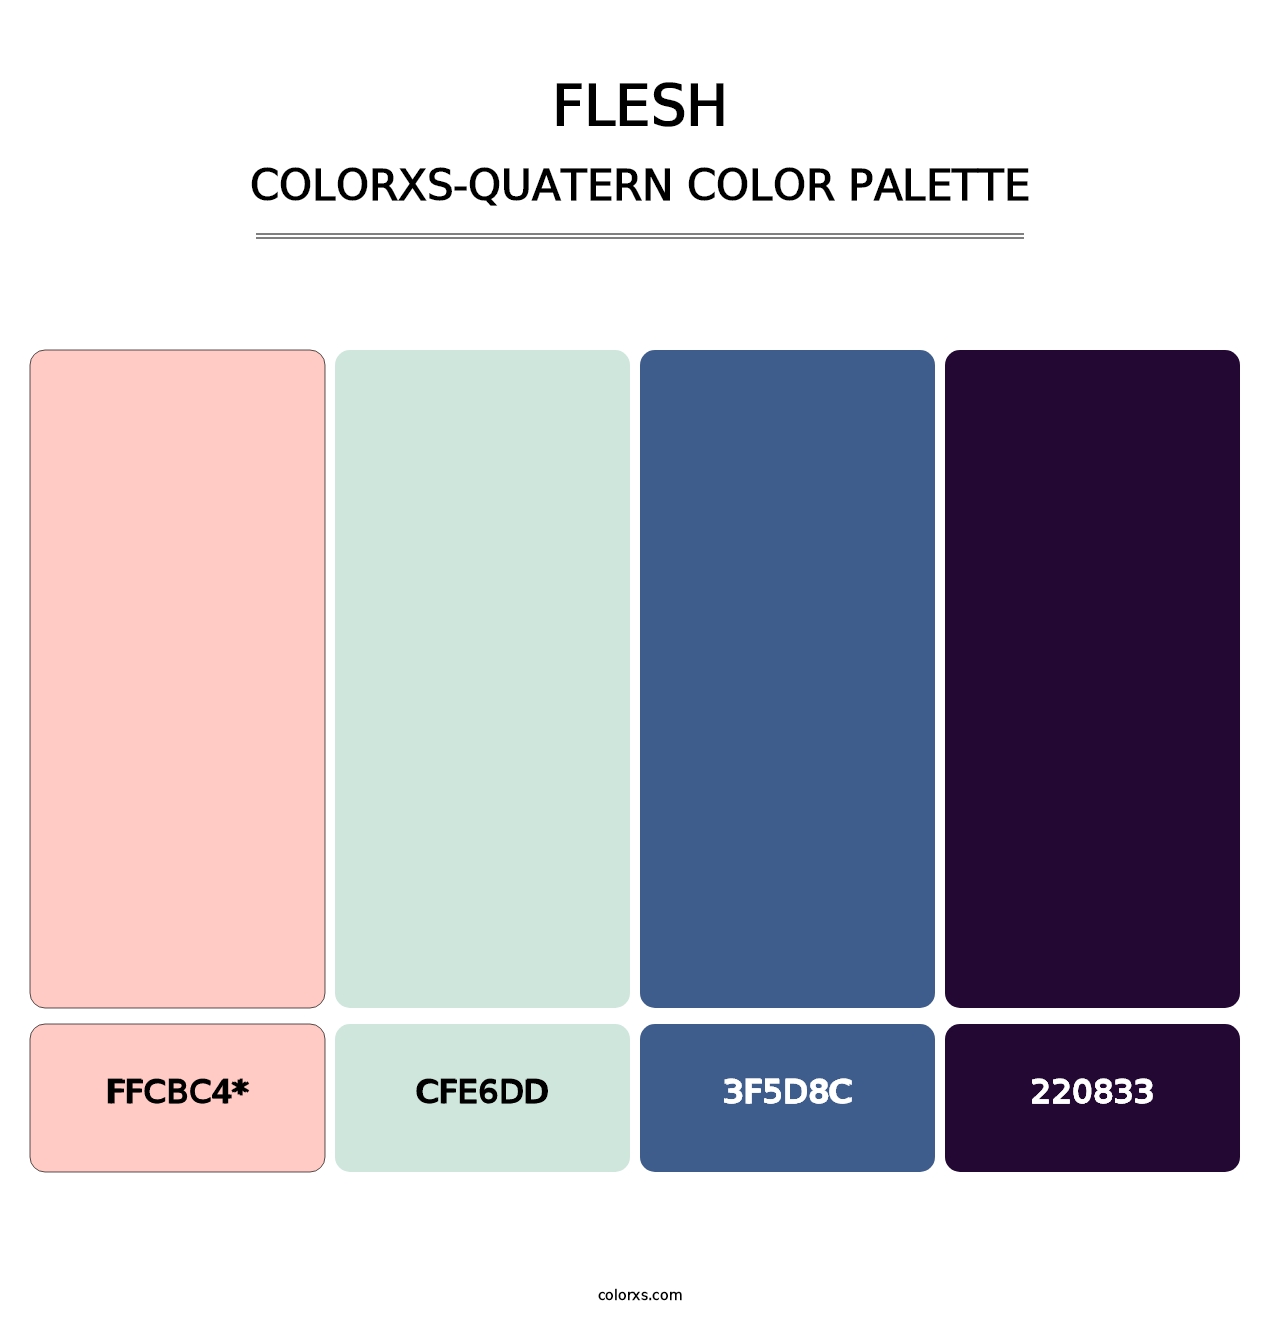 Flesh - Colorxs Quatern Palette